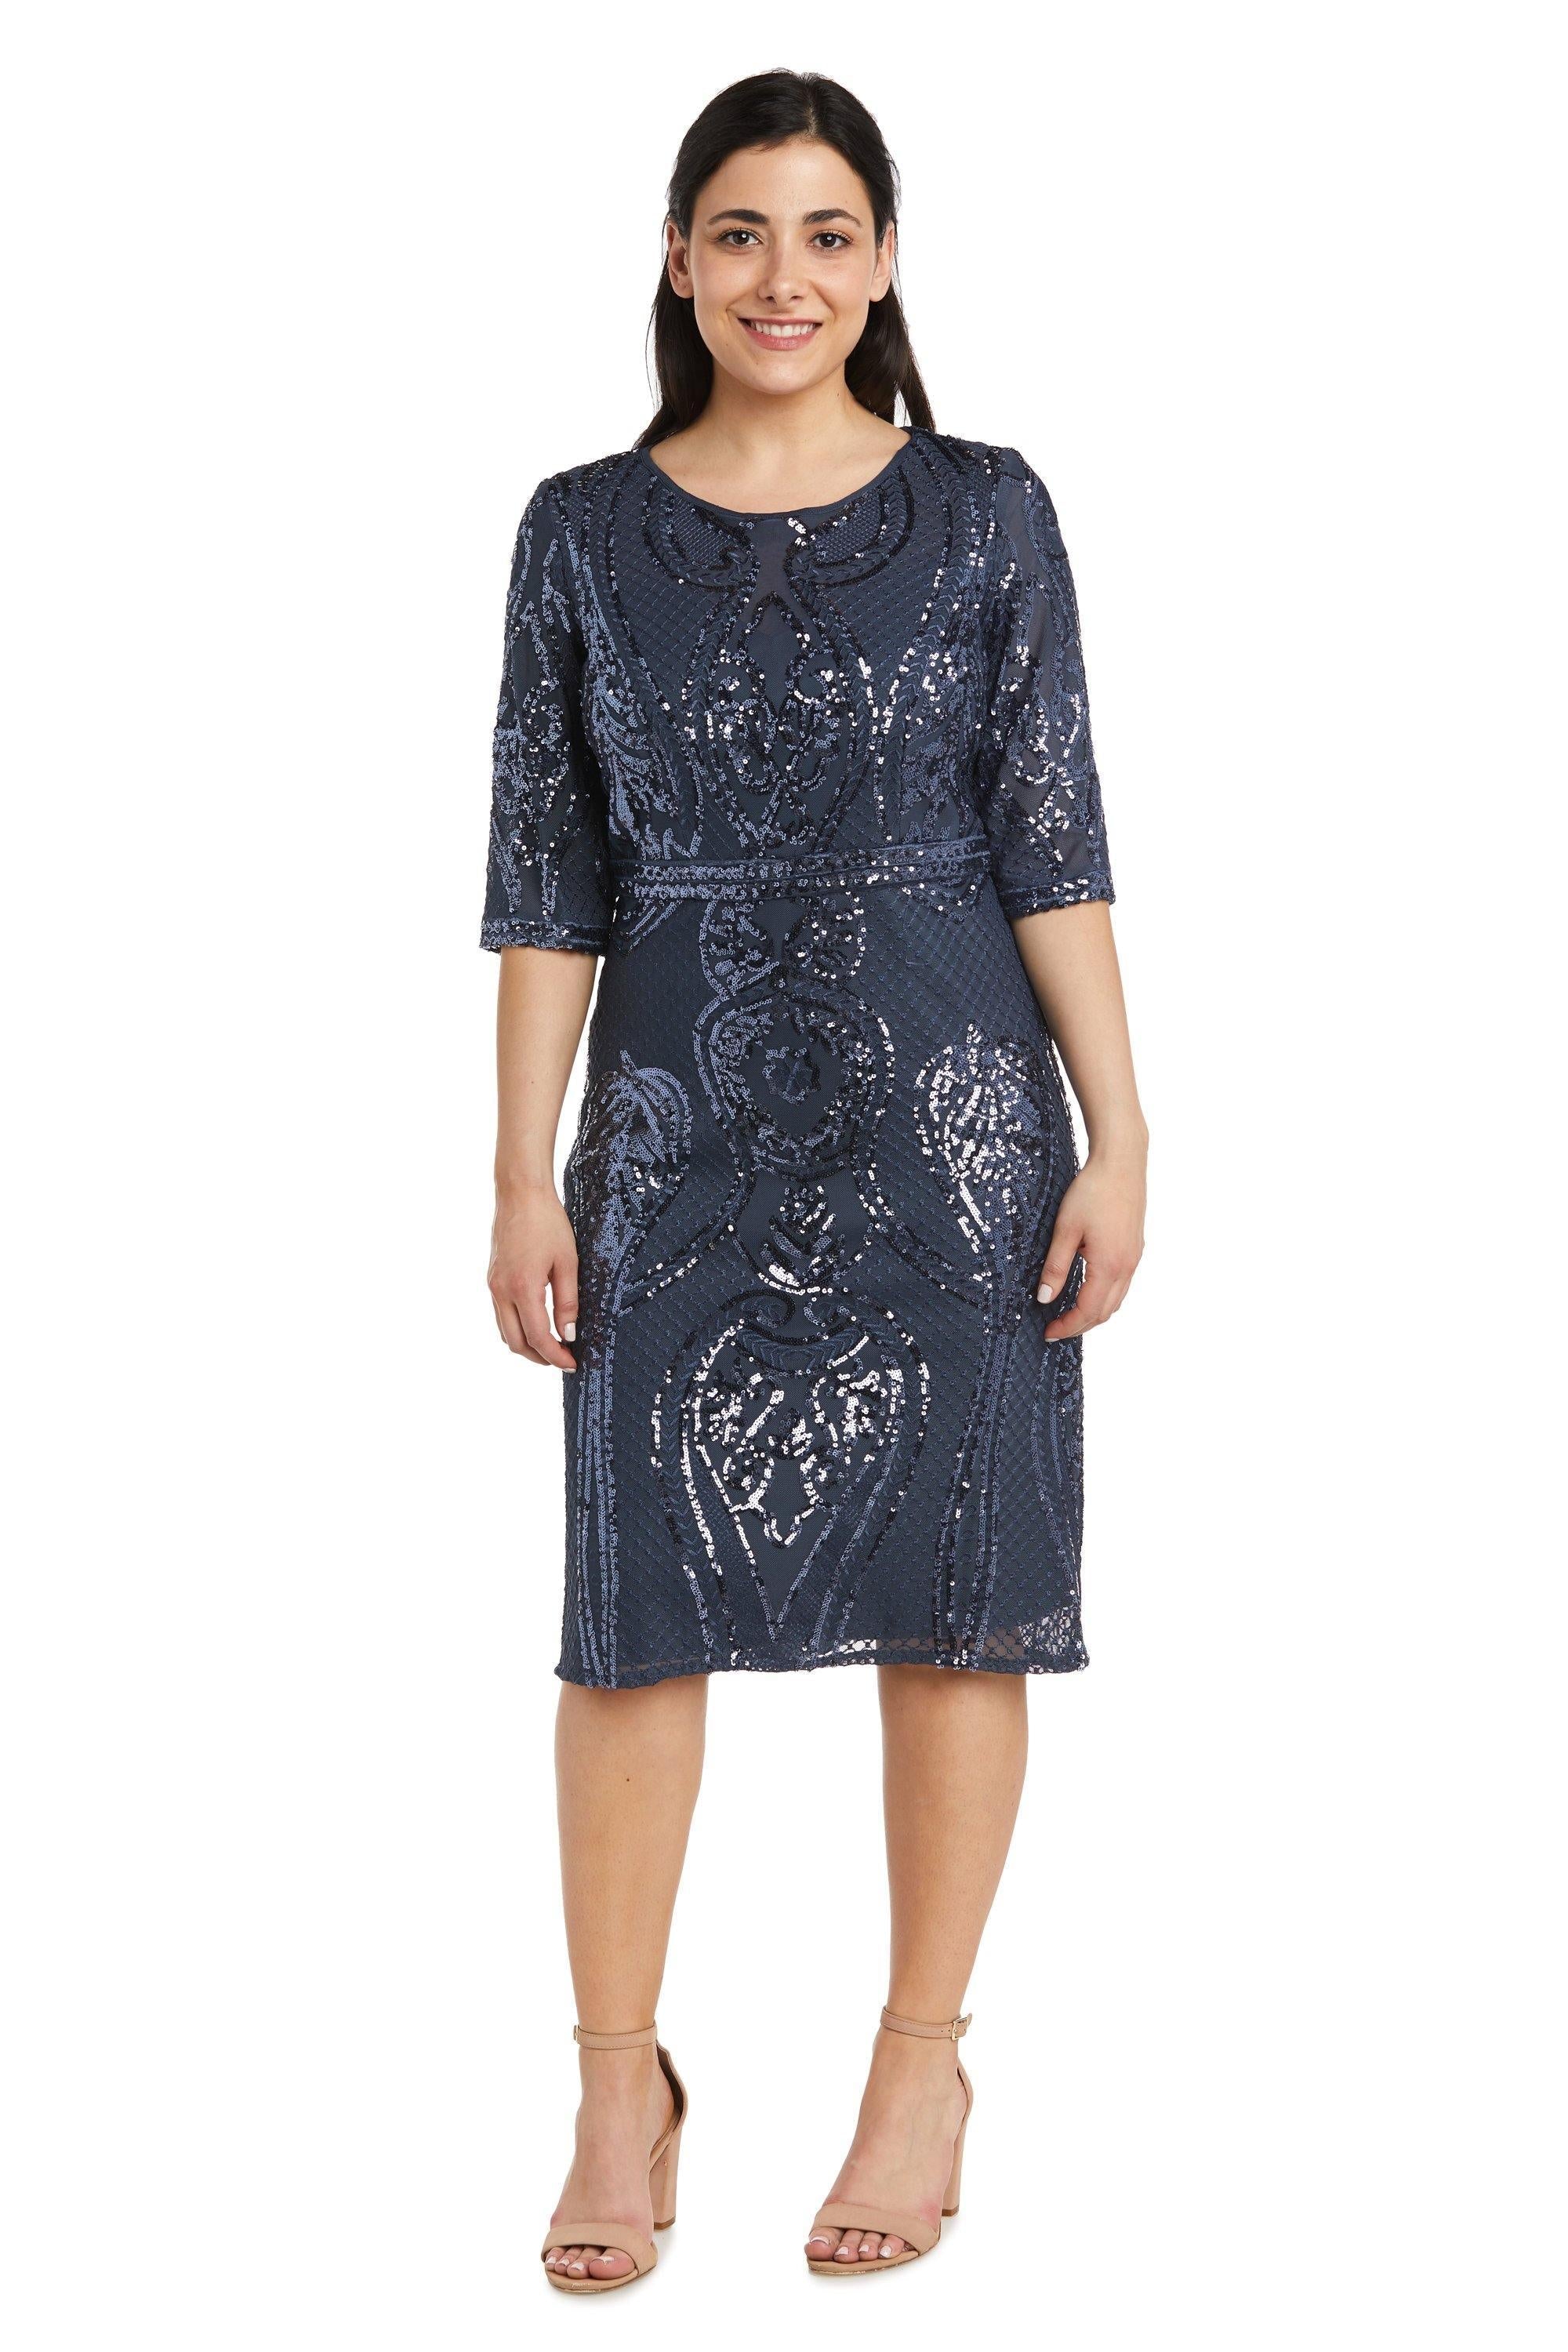 R&M Richards Petite Long Sleeve Short Dress 7434P Sale - The Dress Outlet